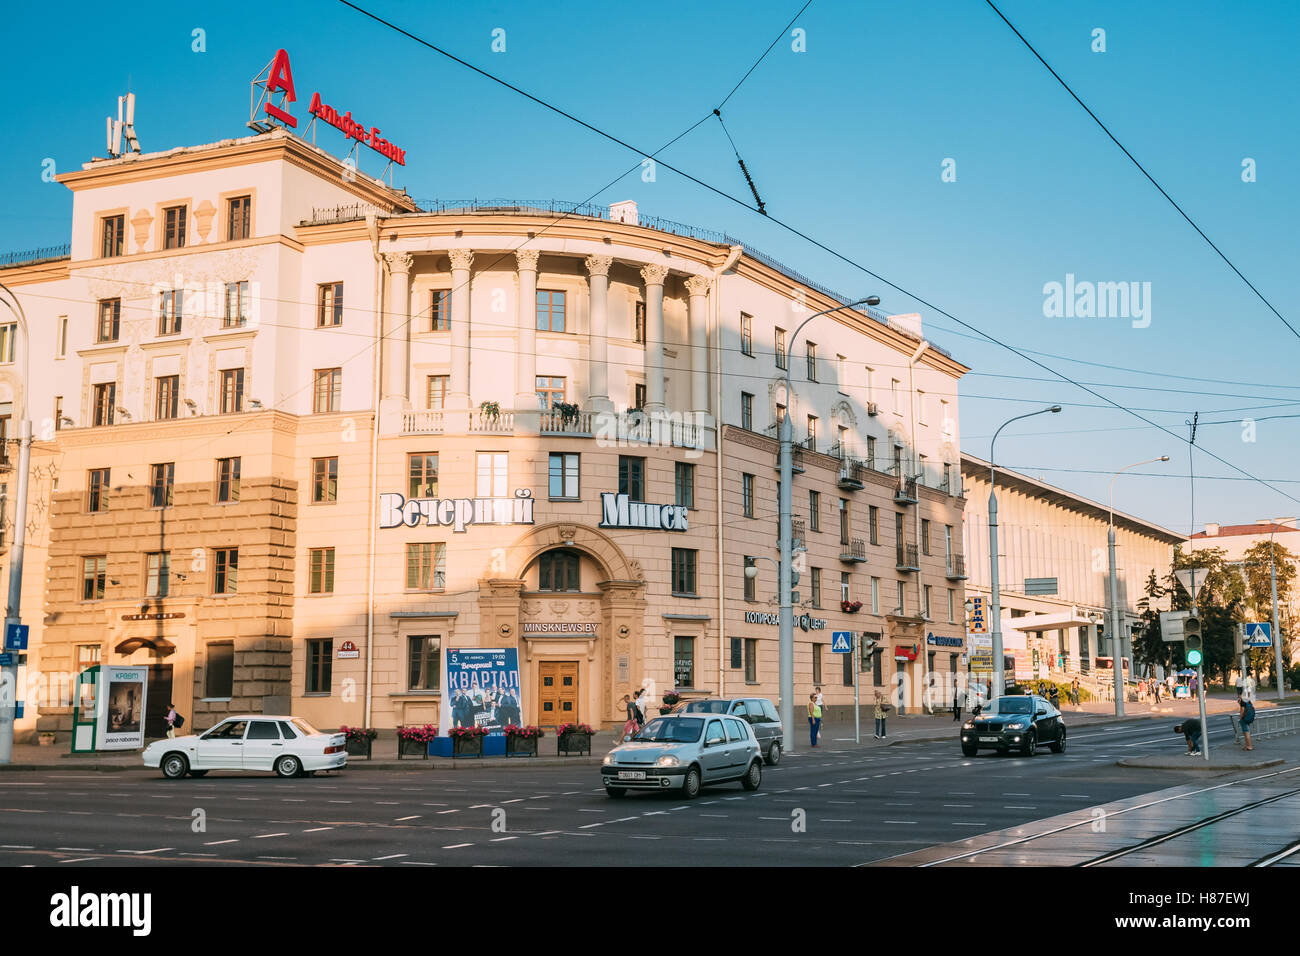 Minsk, Bielorussia. La facciata di edificio sovietico del classicismo socialista, la redazione del giornale Vecherniy Minsk Il Inde Foto Stock